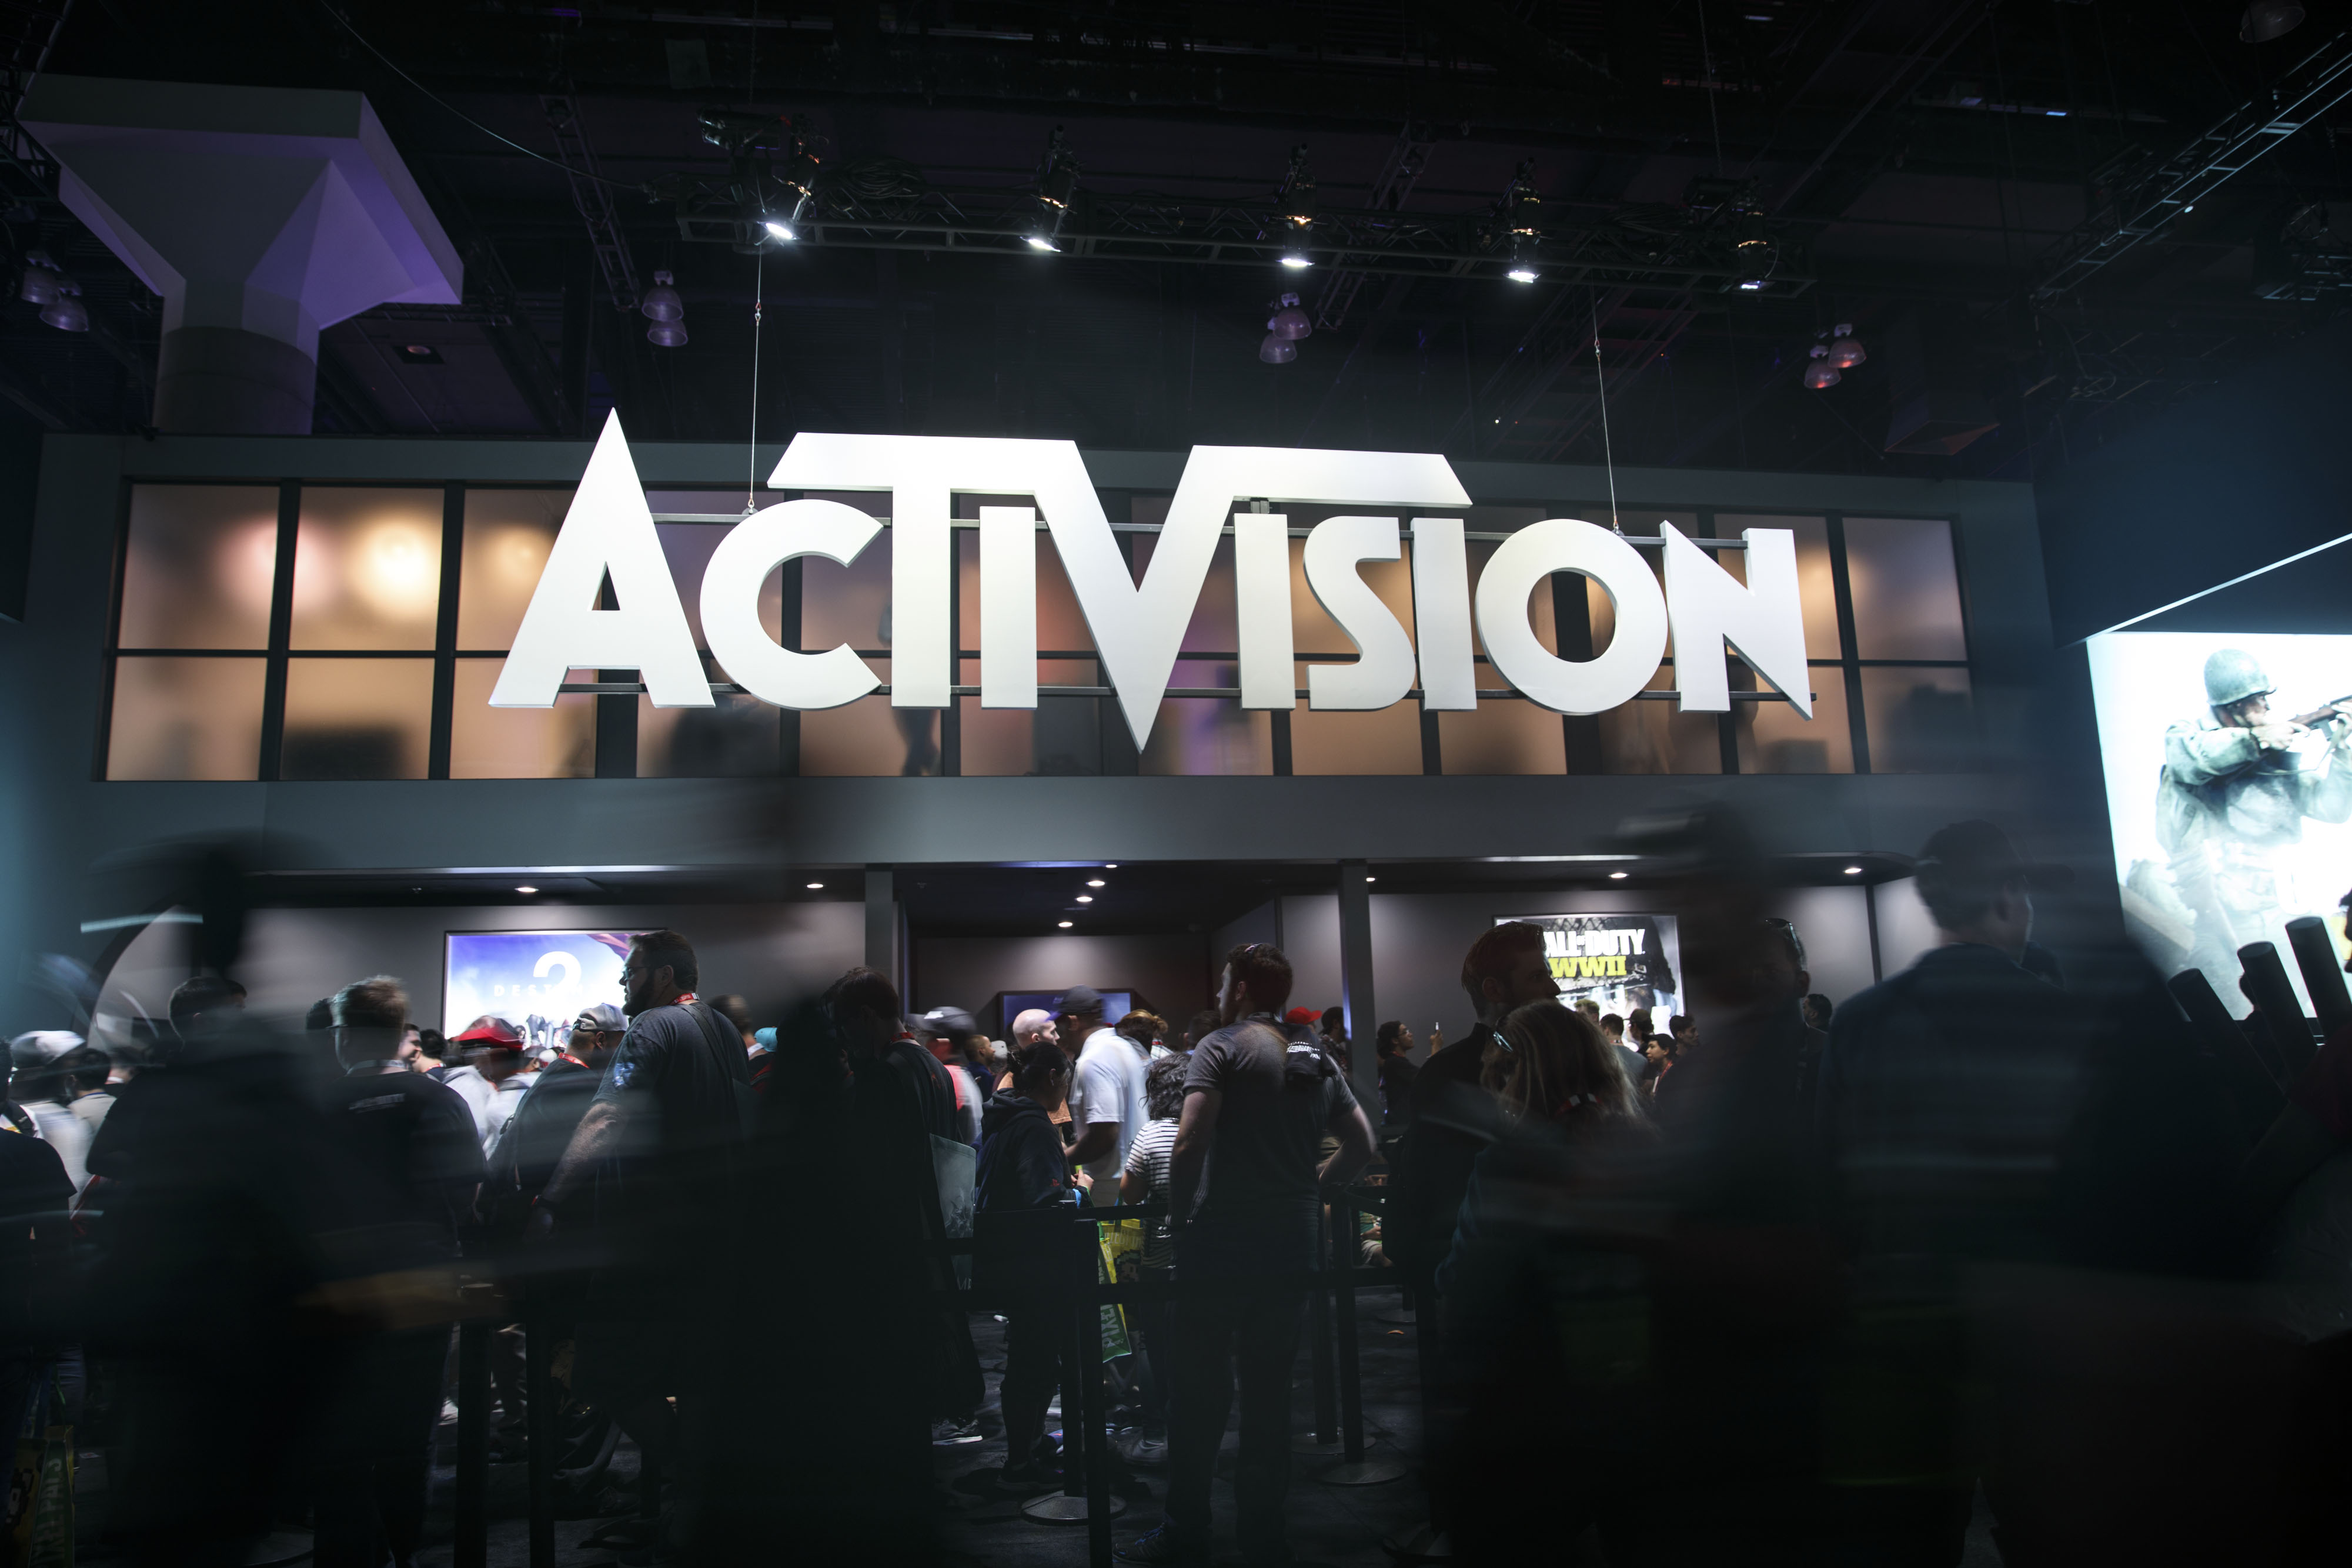 Activision Blizzard: An Expensive Long-Term Idea (NASDAQ:ATVI